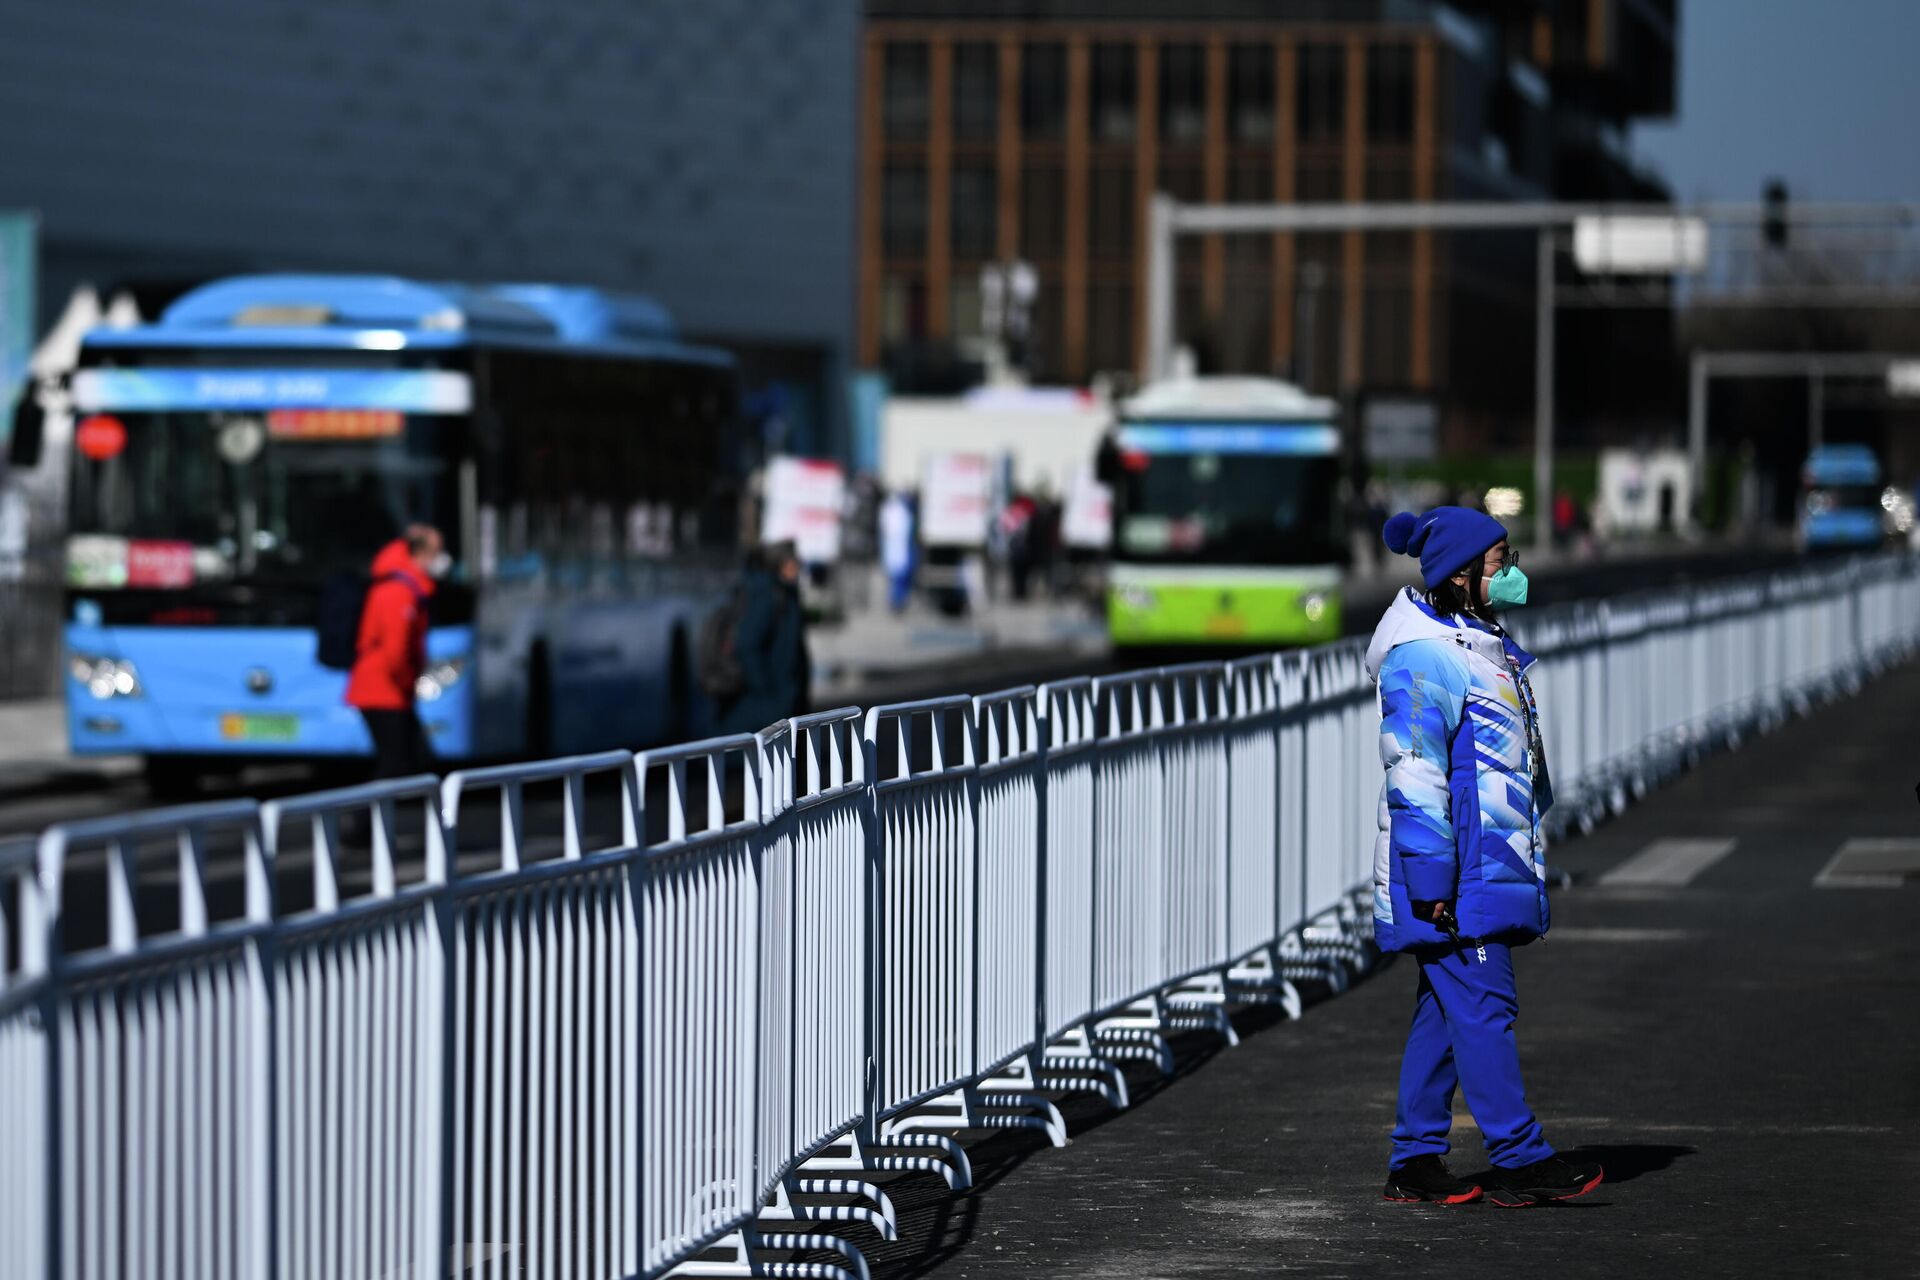 Волонтер транспортного хаба возле главного медиа-центра XXIV Олимпийских игр в Пекине - РИА Новости, 1920, 02.02.2022